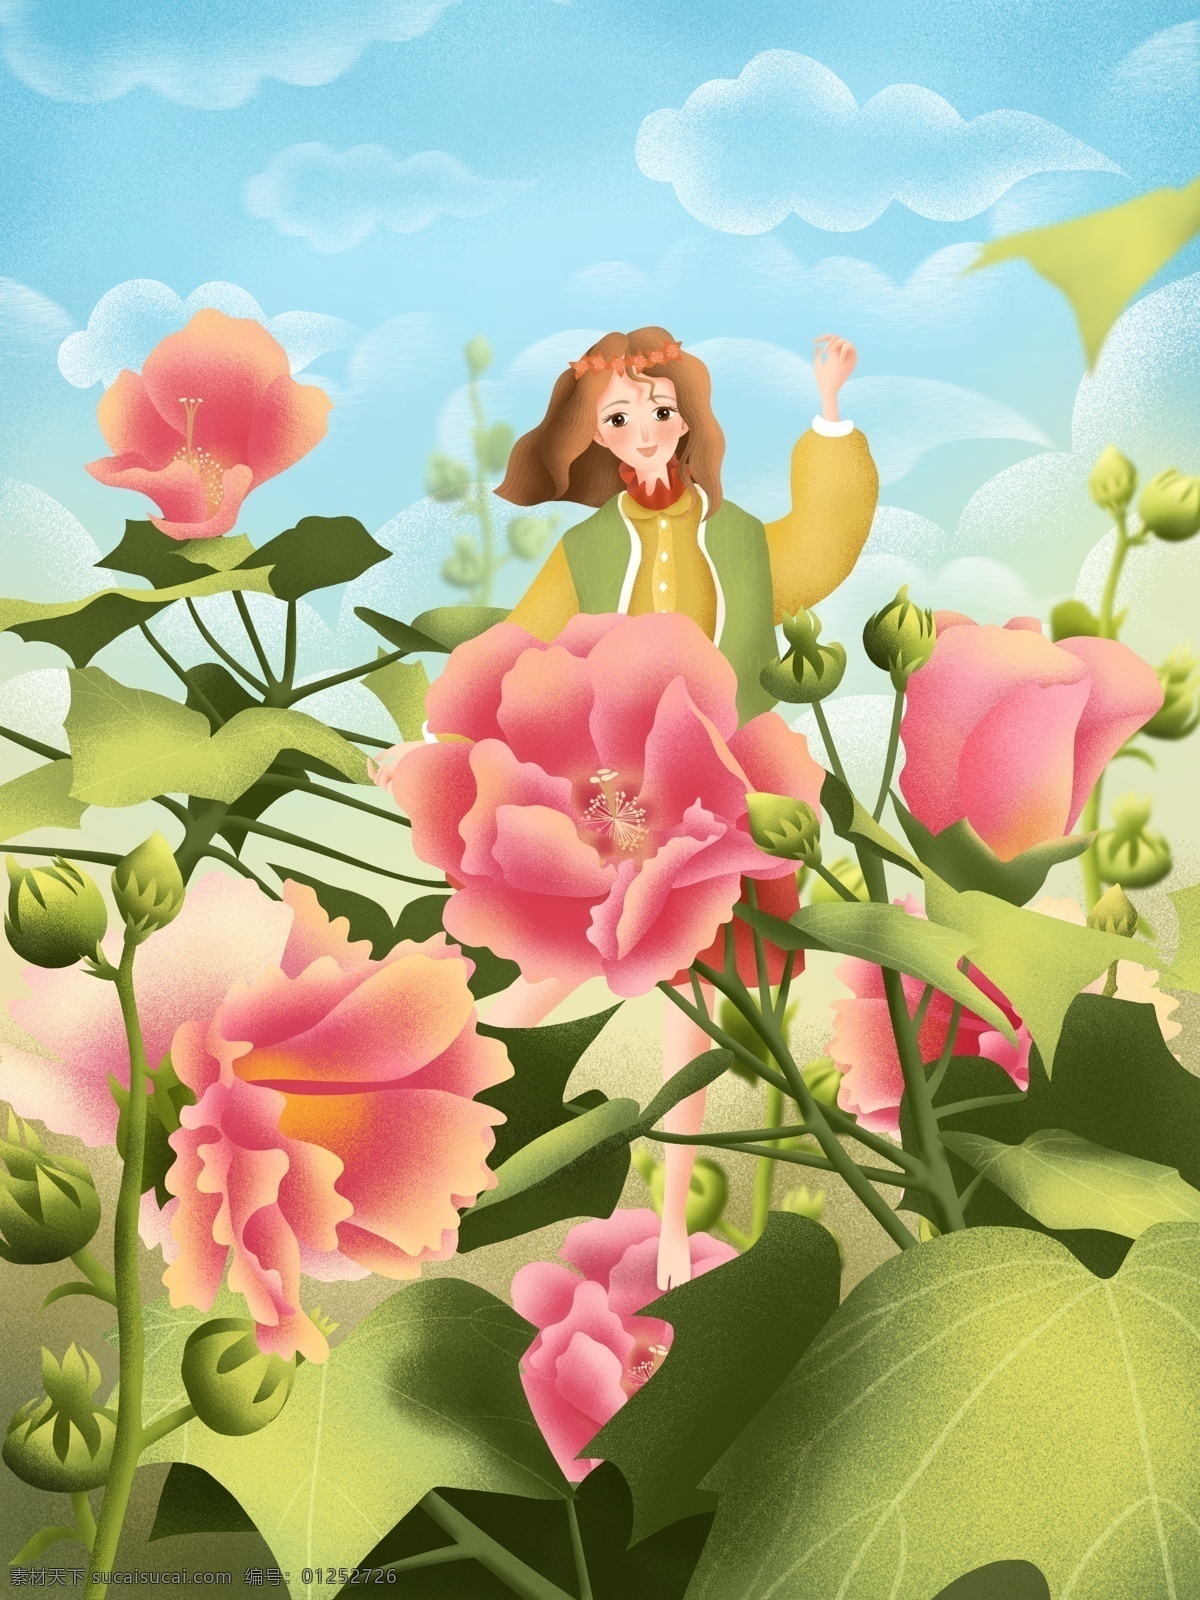 原创 手绘 治愈 系 插画 唯美 三月 女孩 花 植物 叶子 自然 蓝天白云 唯美三月 手绘插画